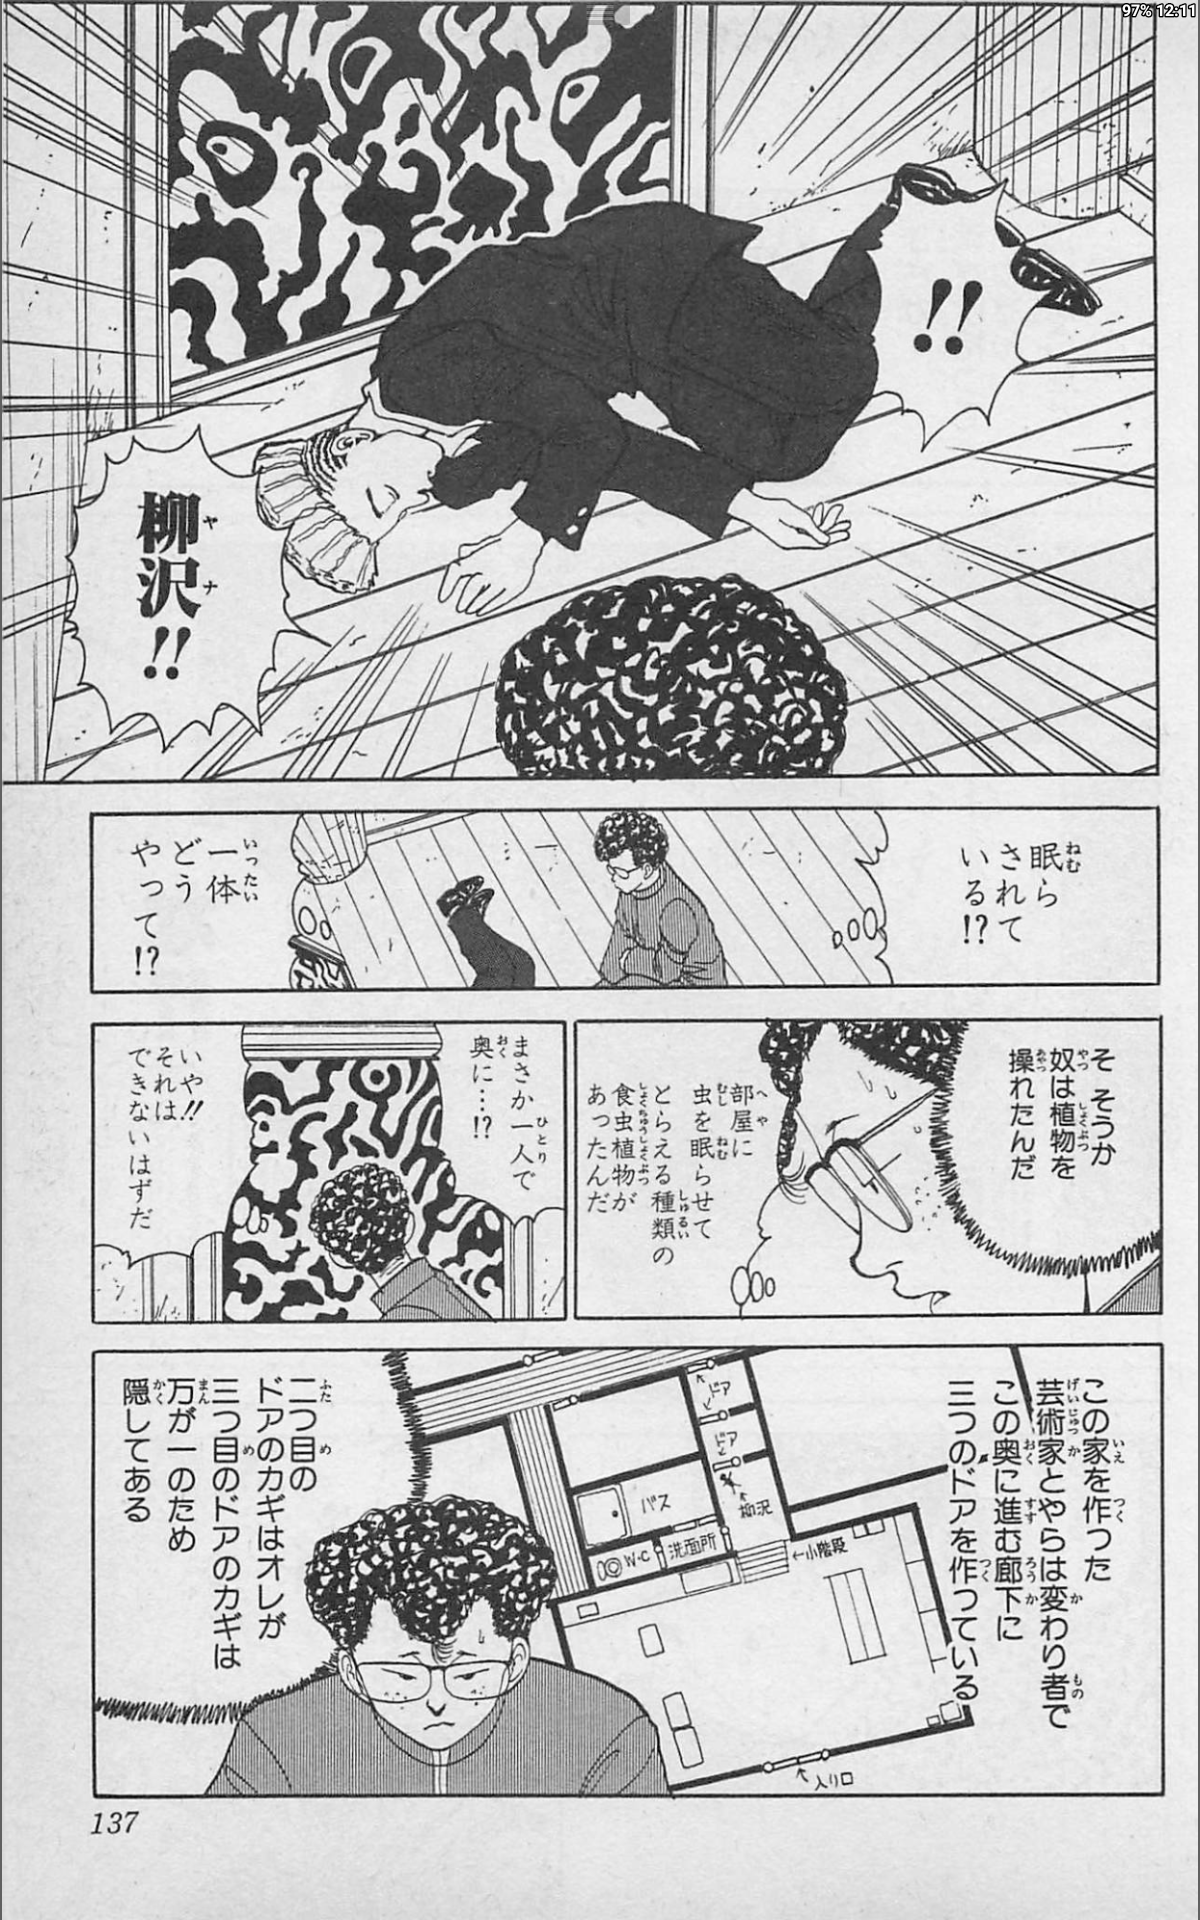 冨樫義博の魅力は やはり知的戦略ゲームだ 幽 遊 白書 子どもたちと笑おう